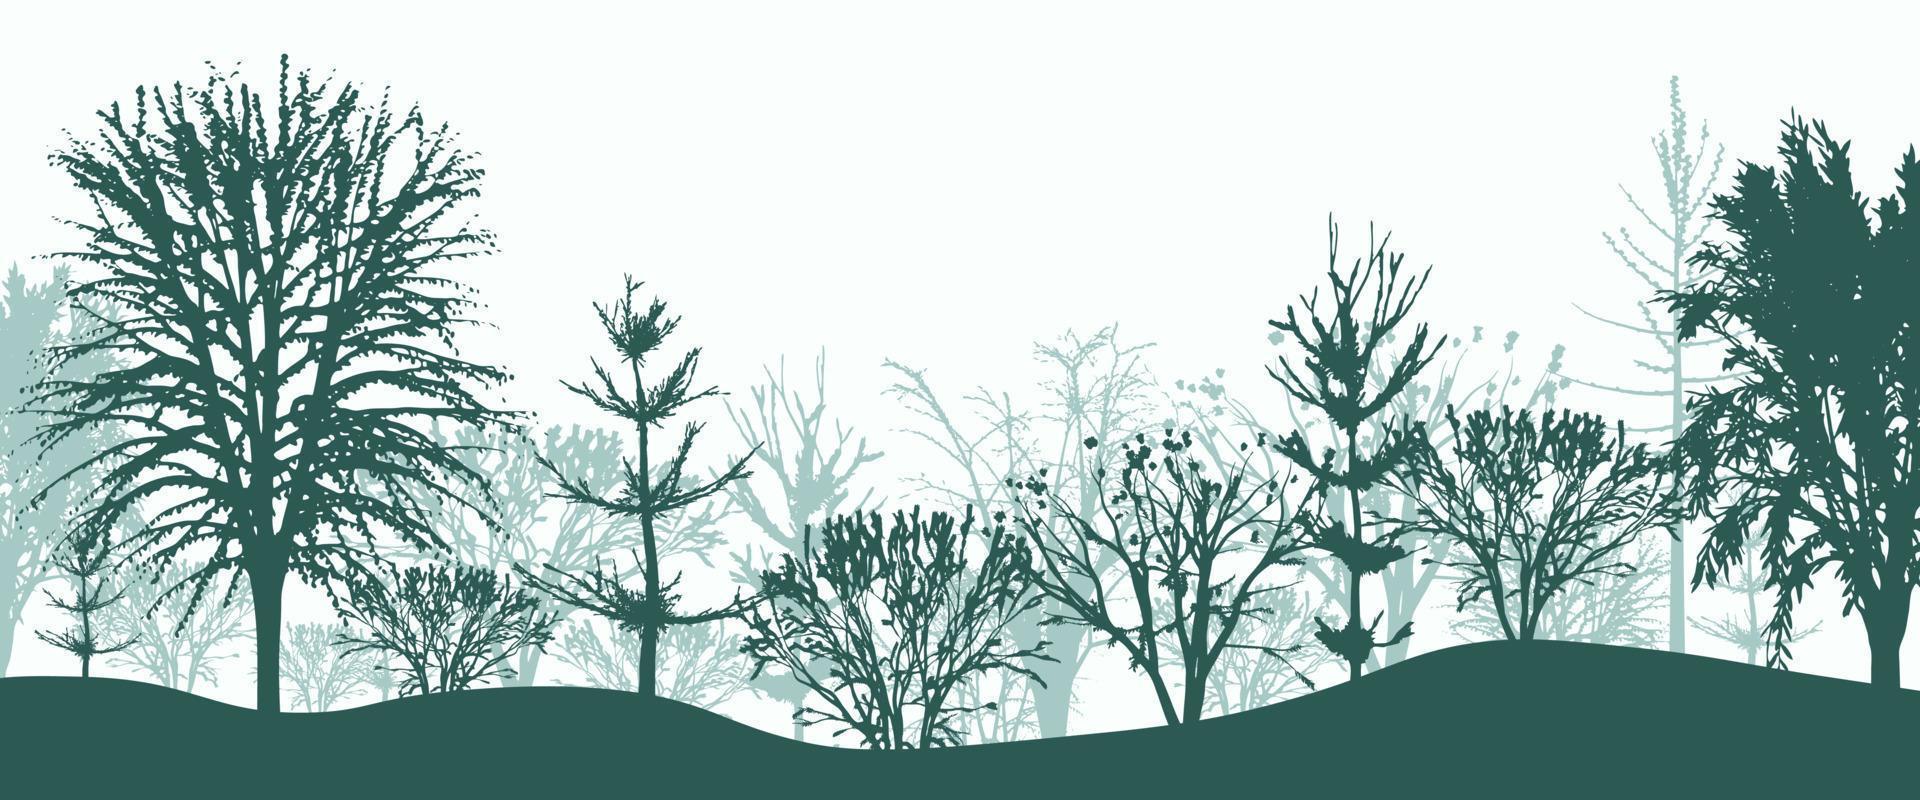 siluetas verdes de árboles en el fondo del bosque. matorral matutino místico de abetos y hayas con arbustos en niebla ligera. paisaje misterioso en el diseño de vectores naturales